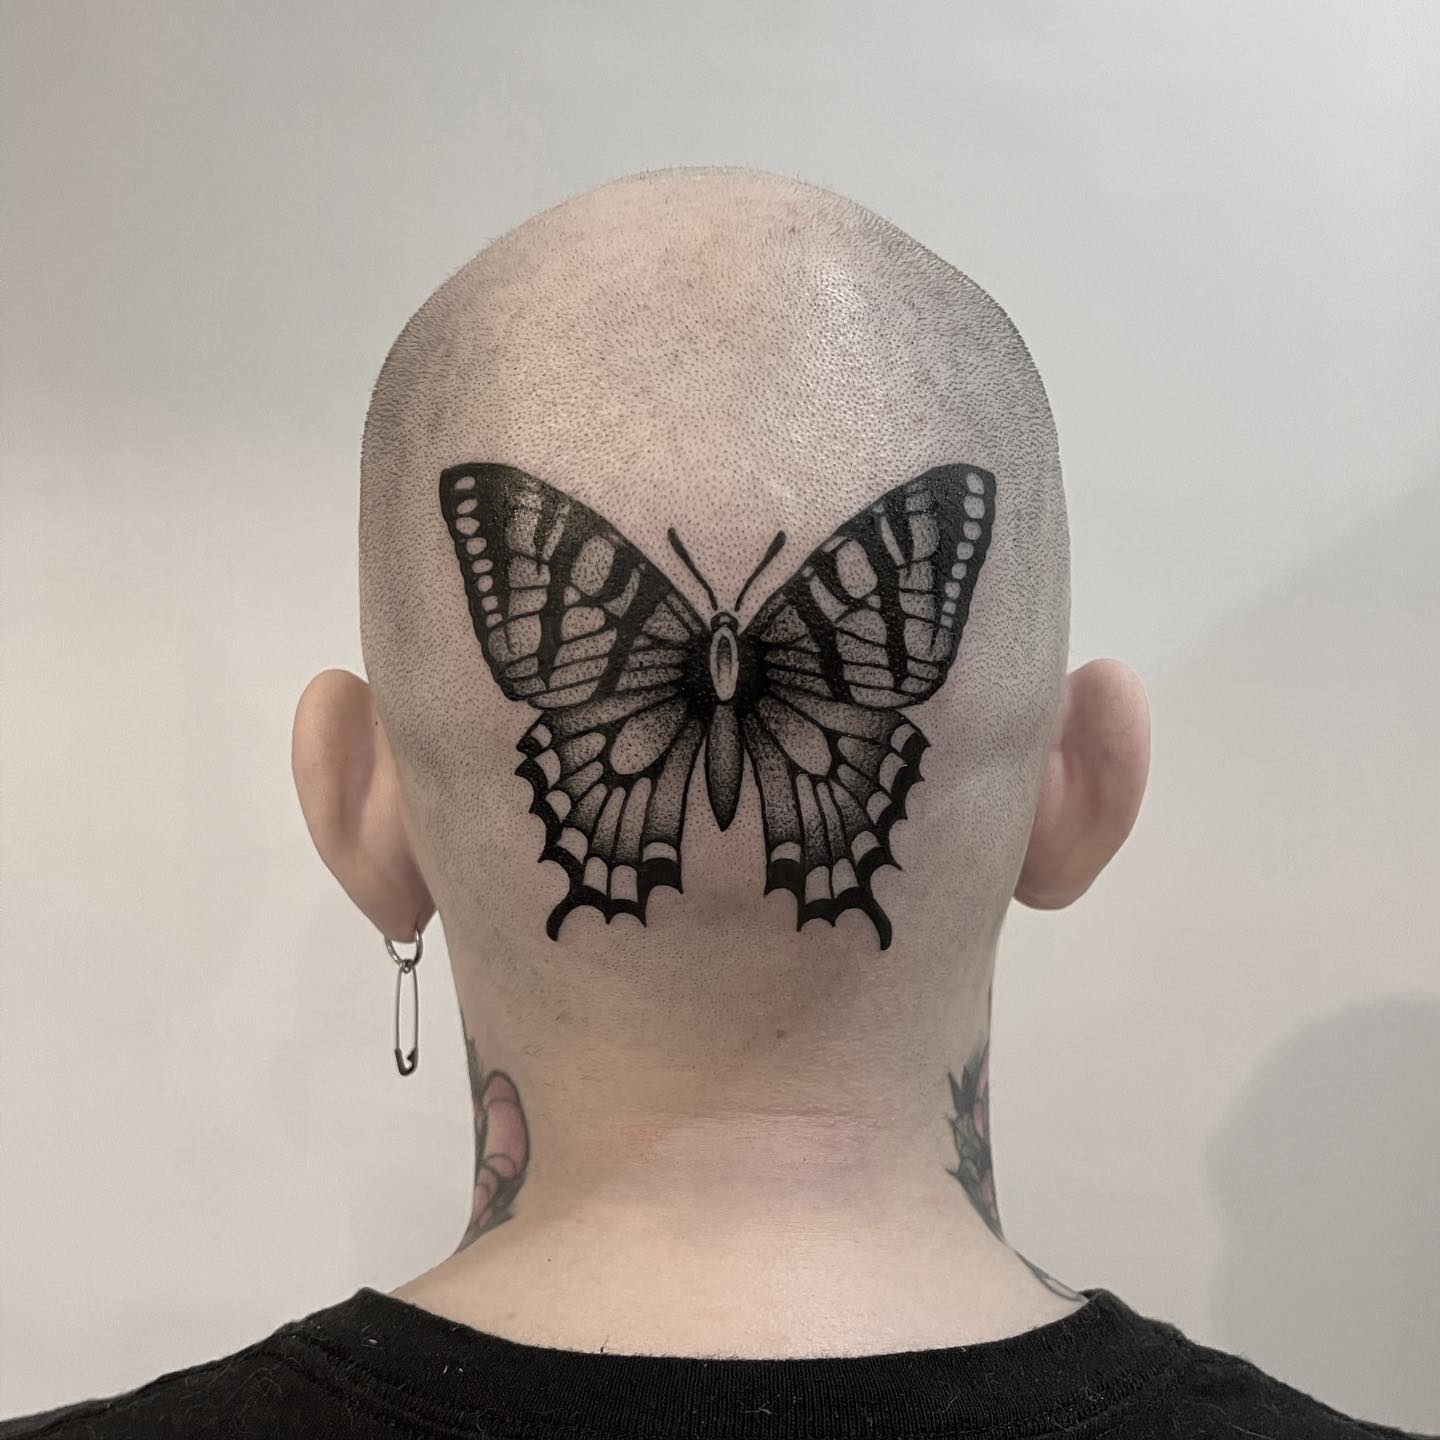 Big Black Butterfly Tattoo on Head